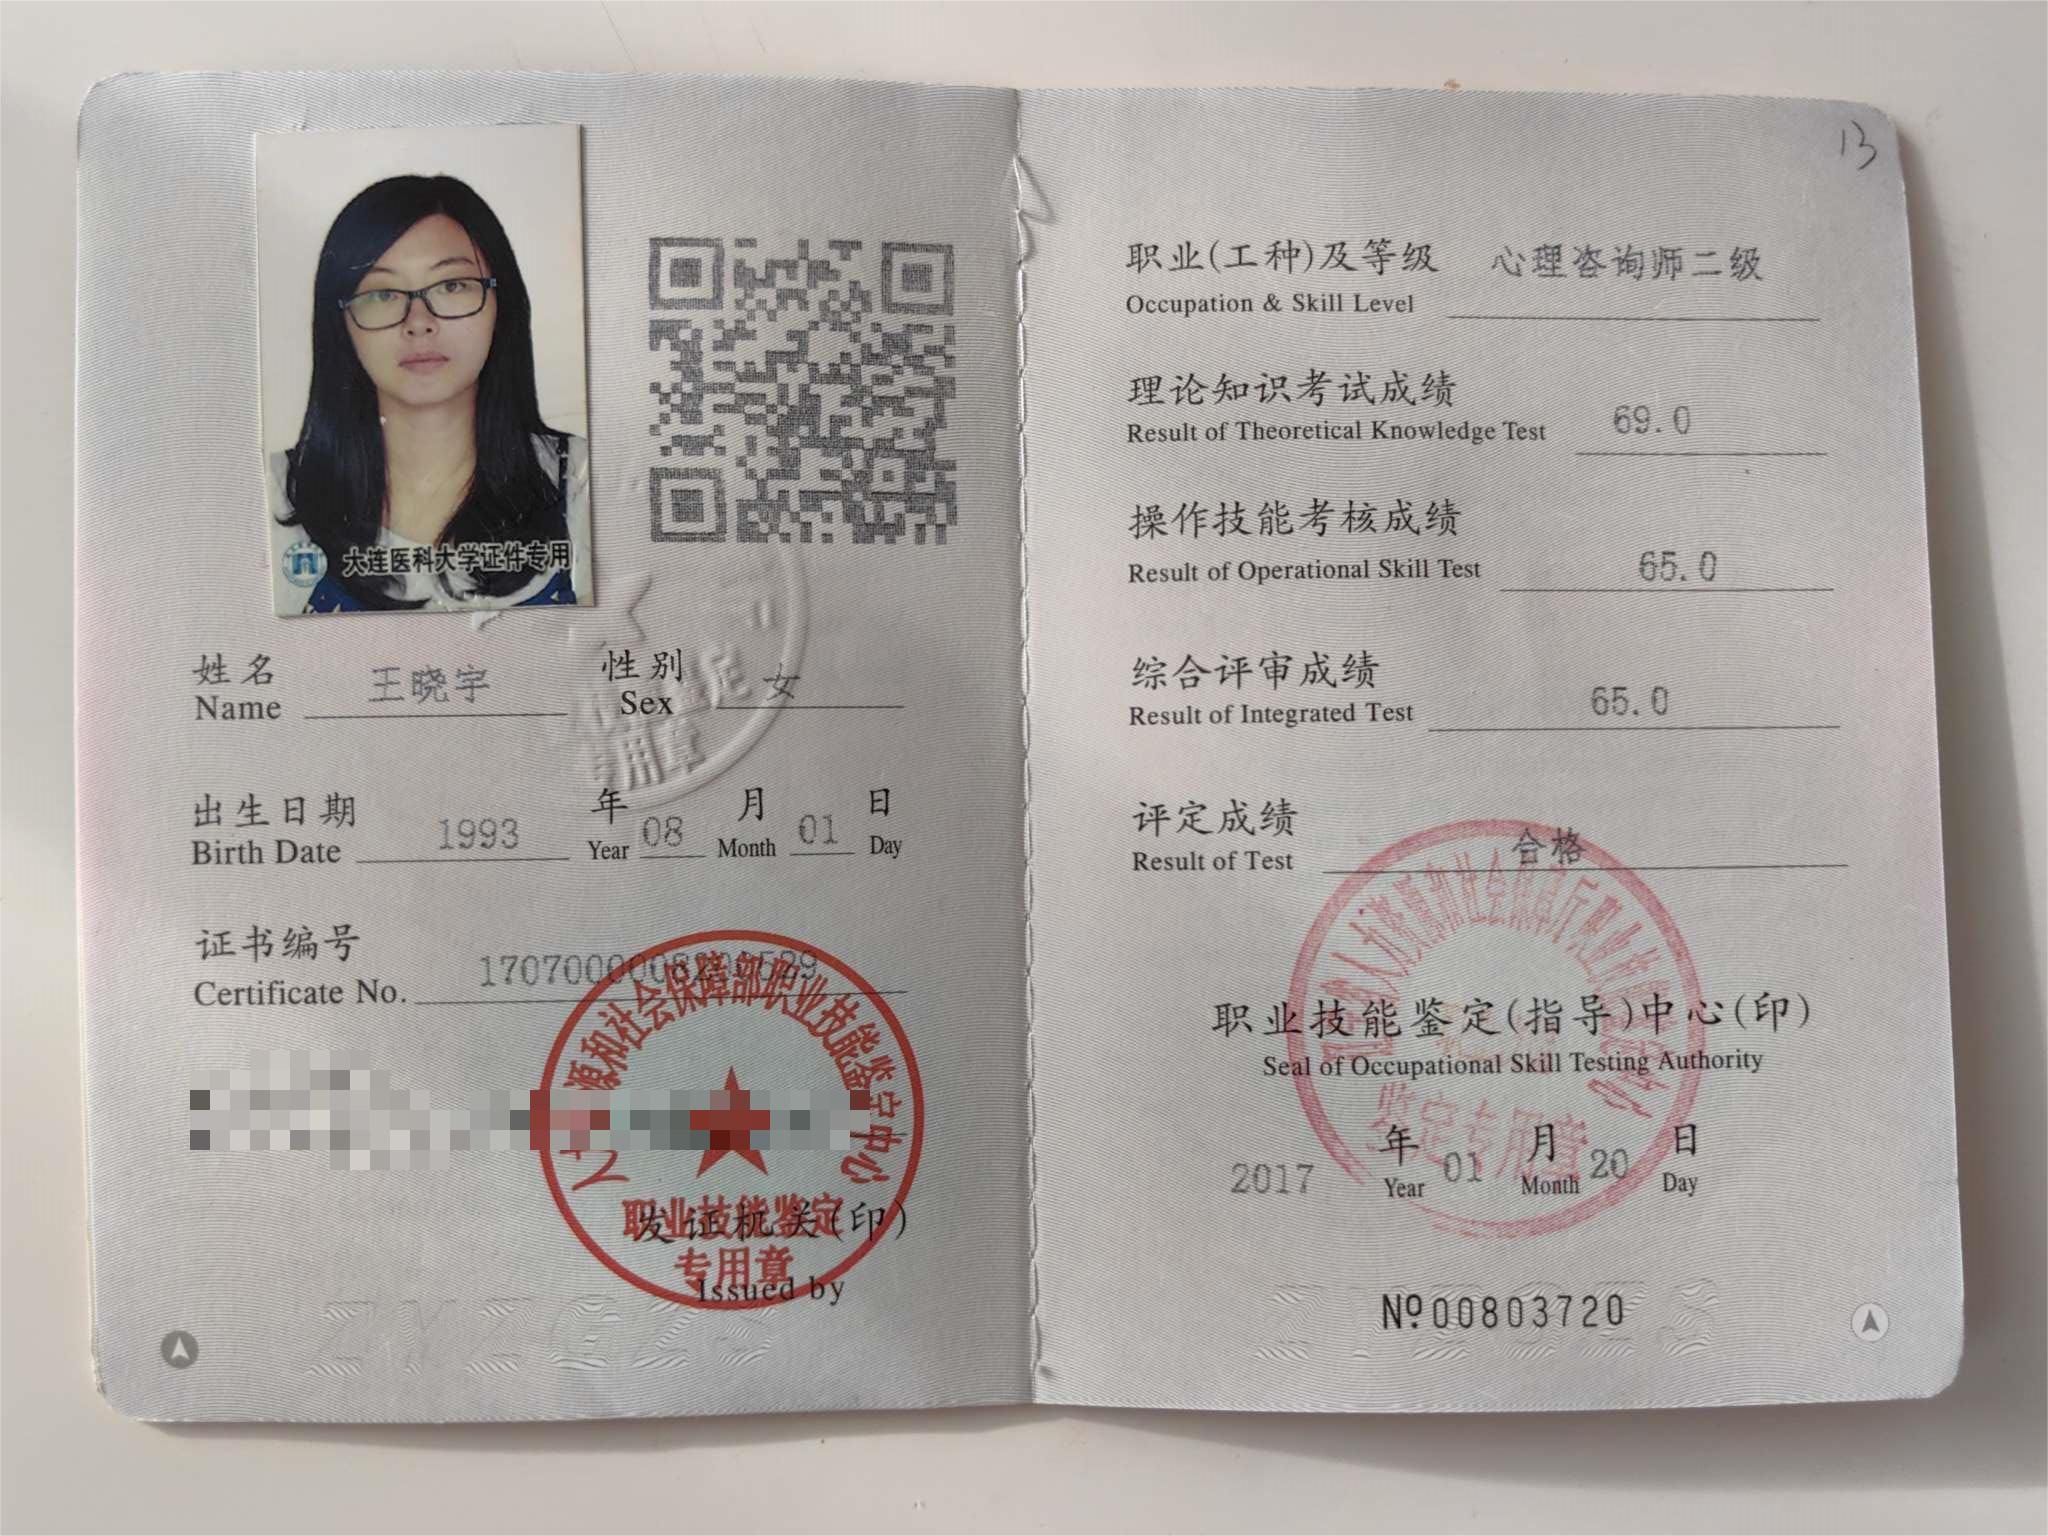 咨询师王晓宇的职业证书